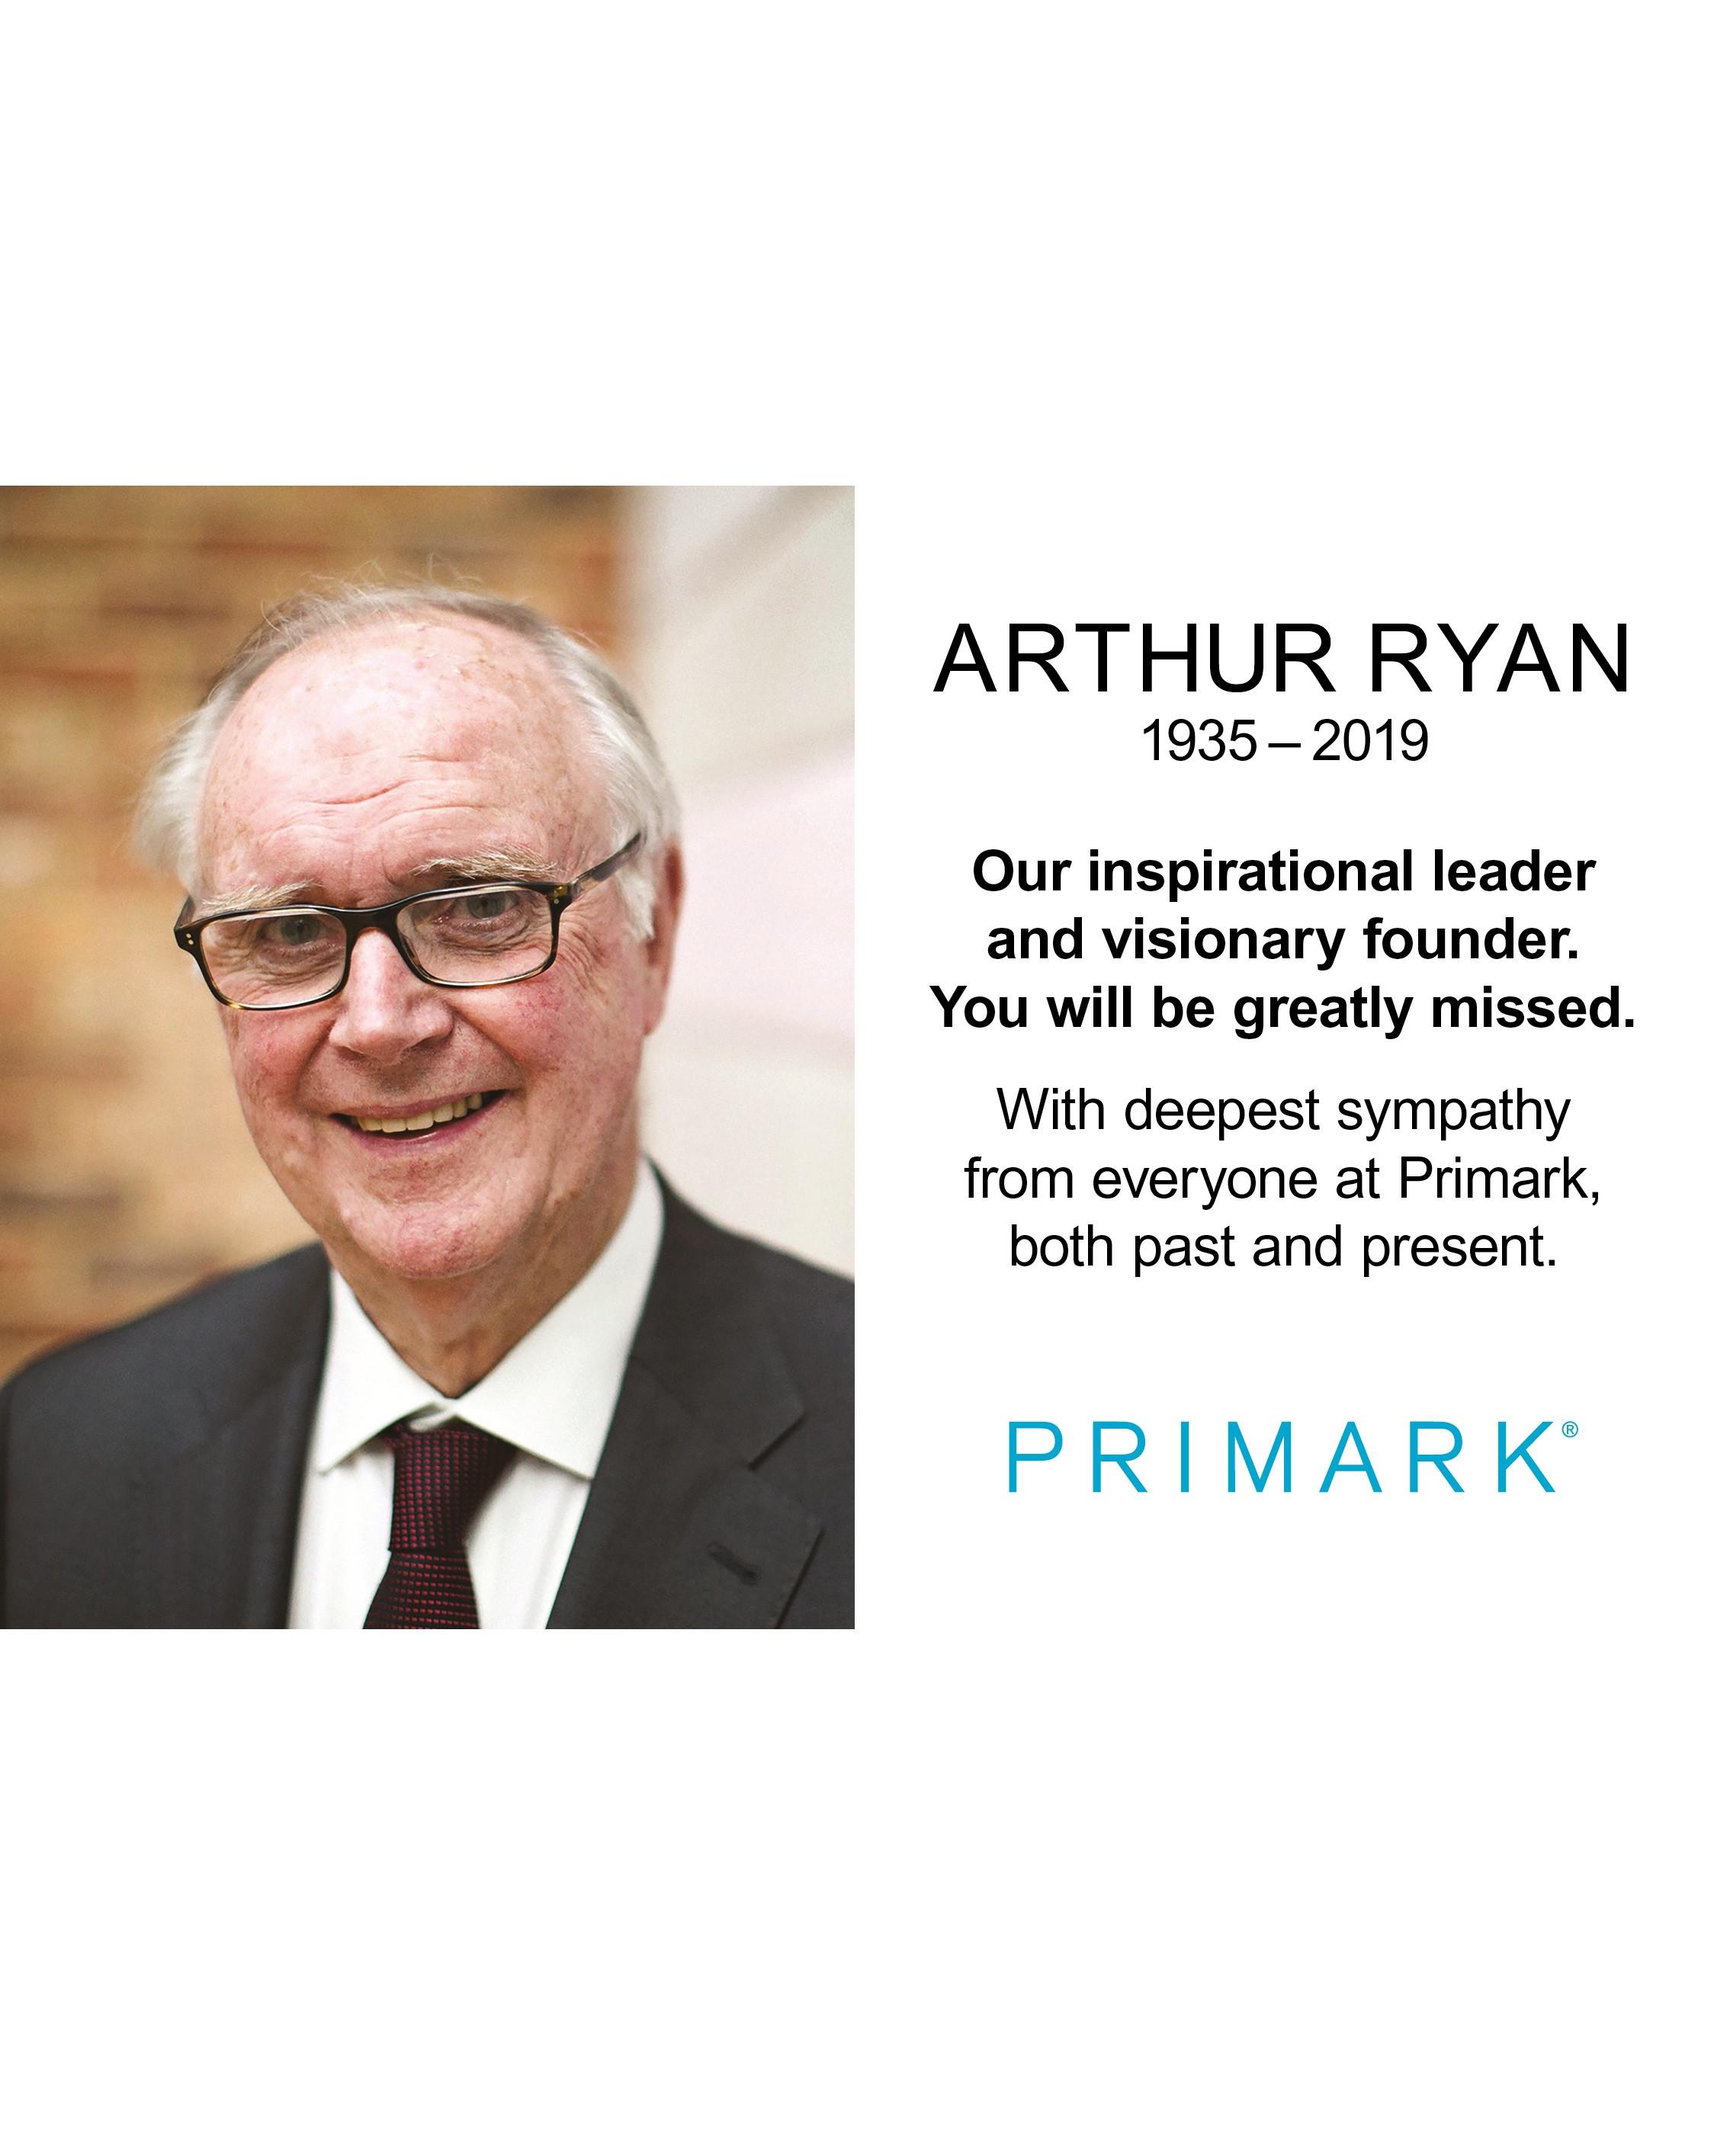 Arthur Ryan Primark